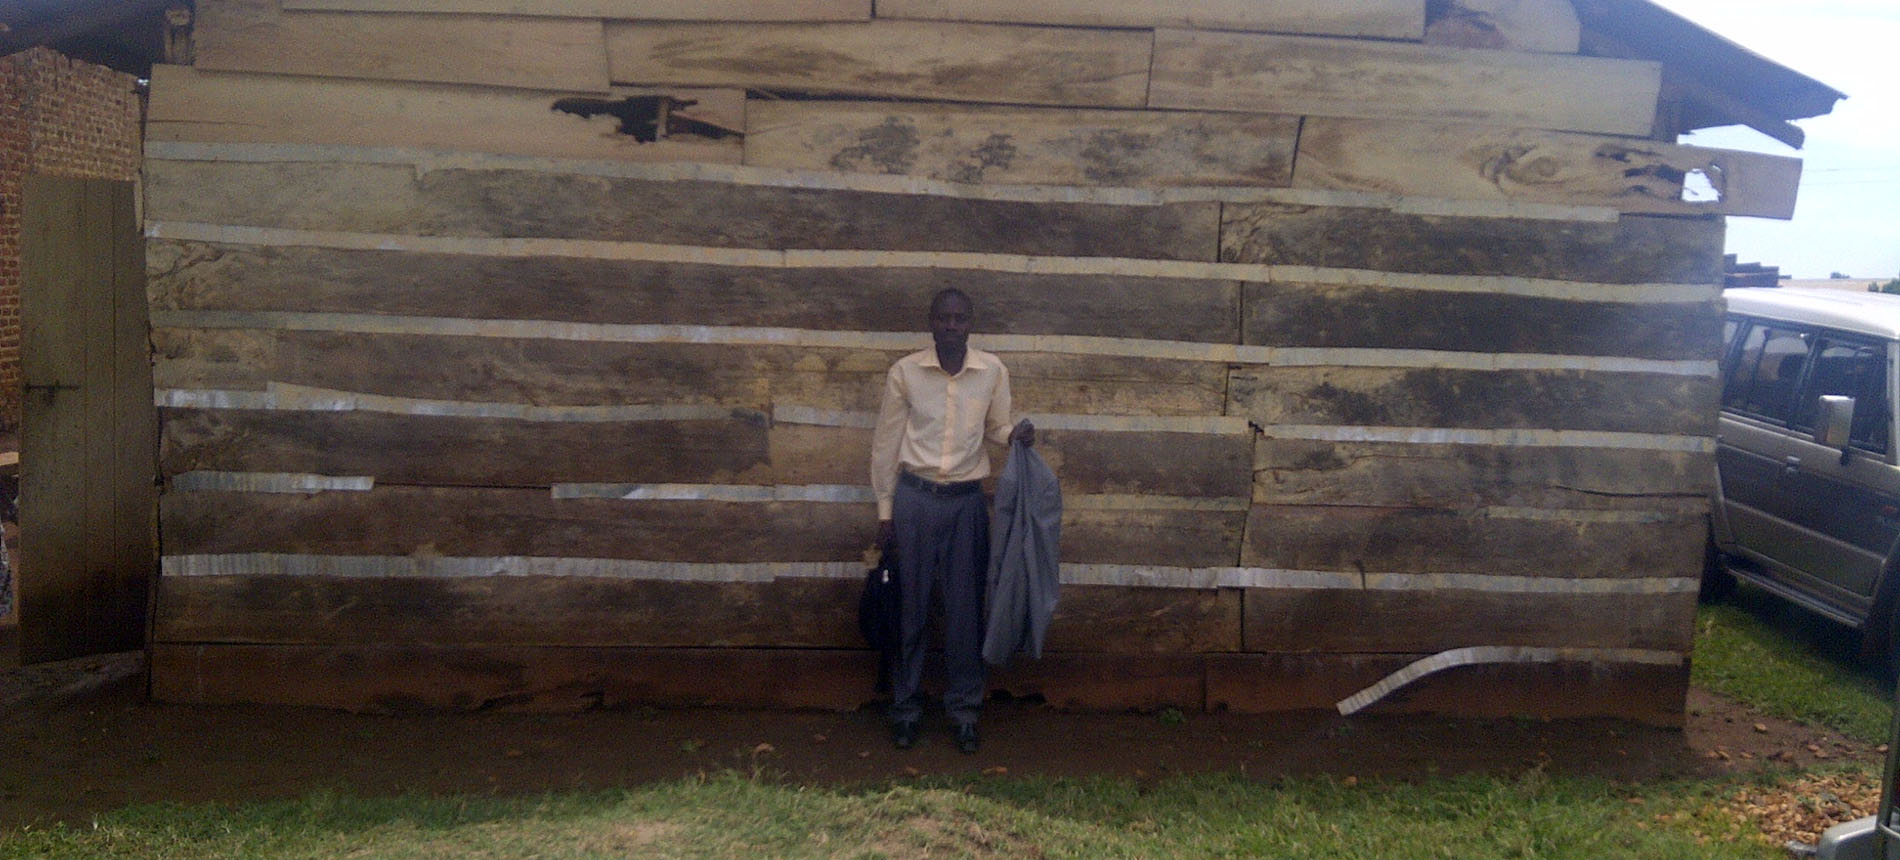 Testimonies from Uganda